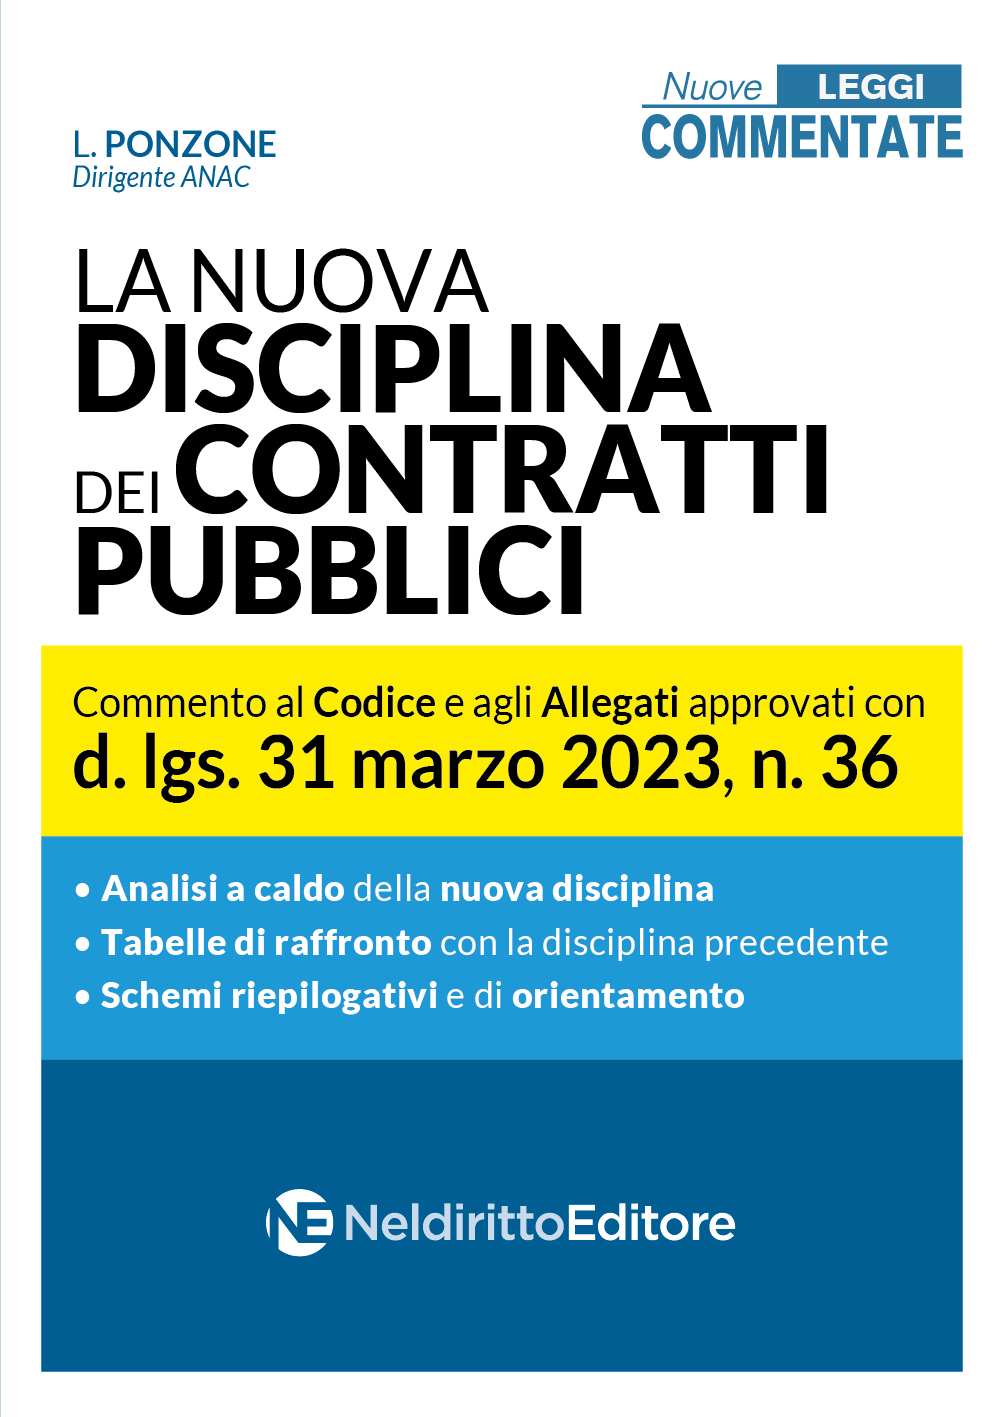 La nuova disciplina dei contratti pubblici. Commento al Codice e agli Allegati approvati con d.lgs. 31 marzo 2023, n.36 